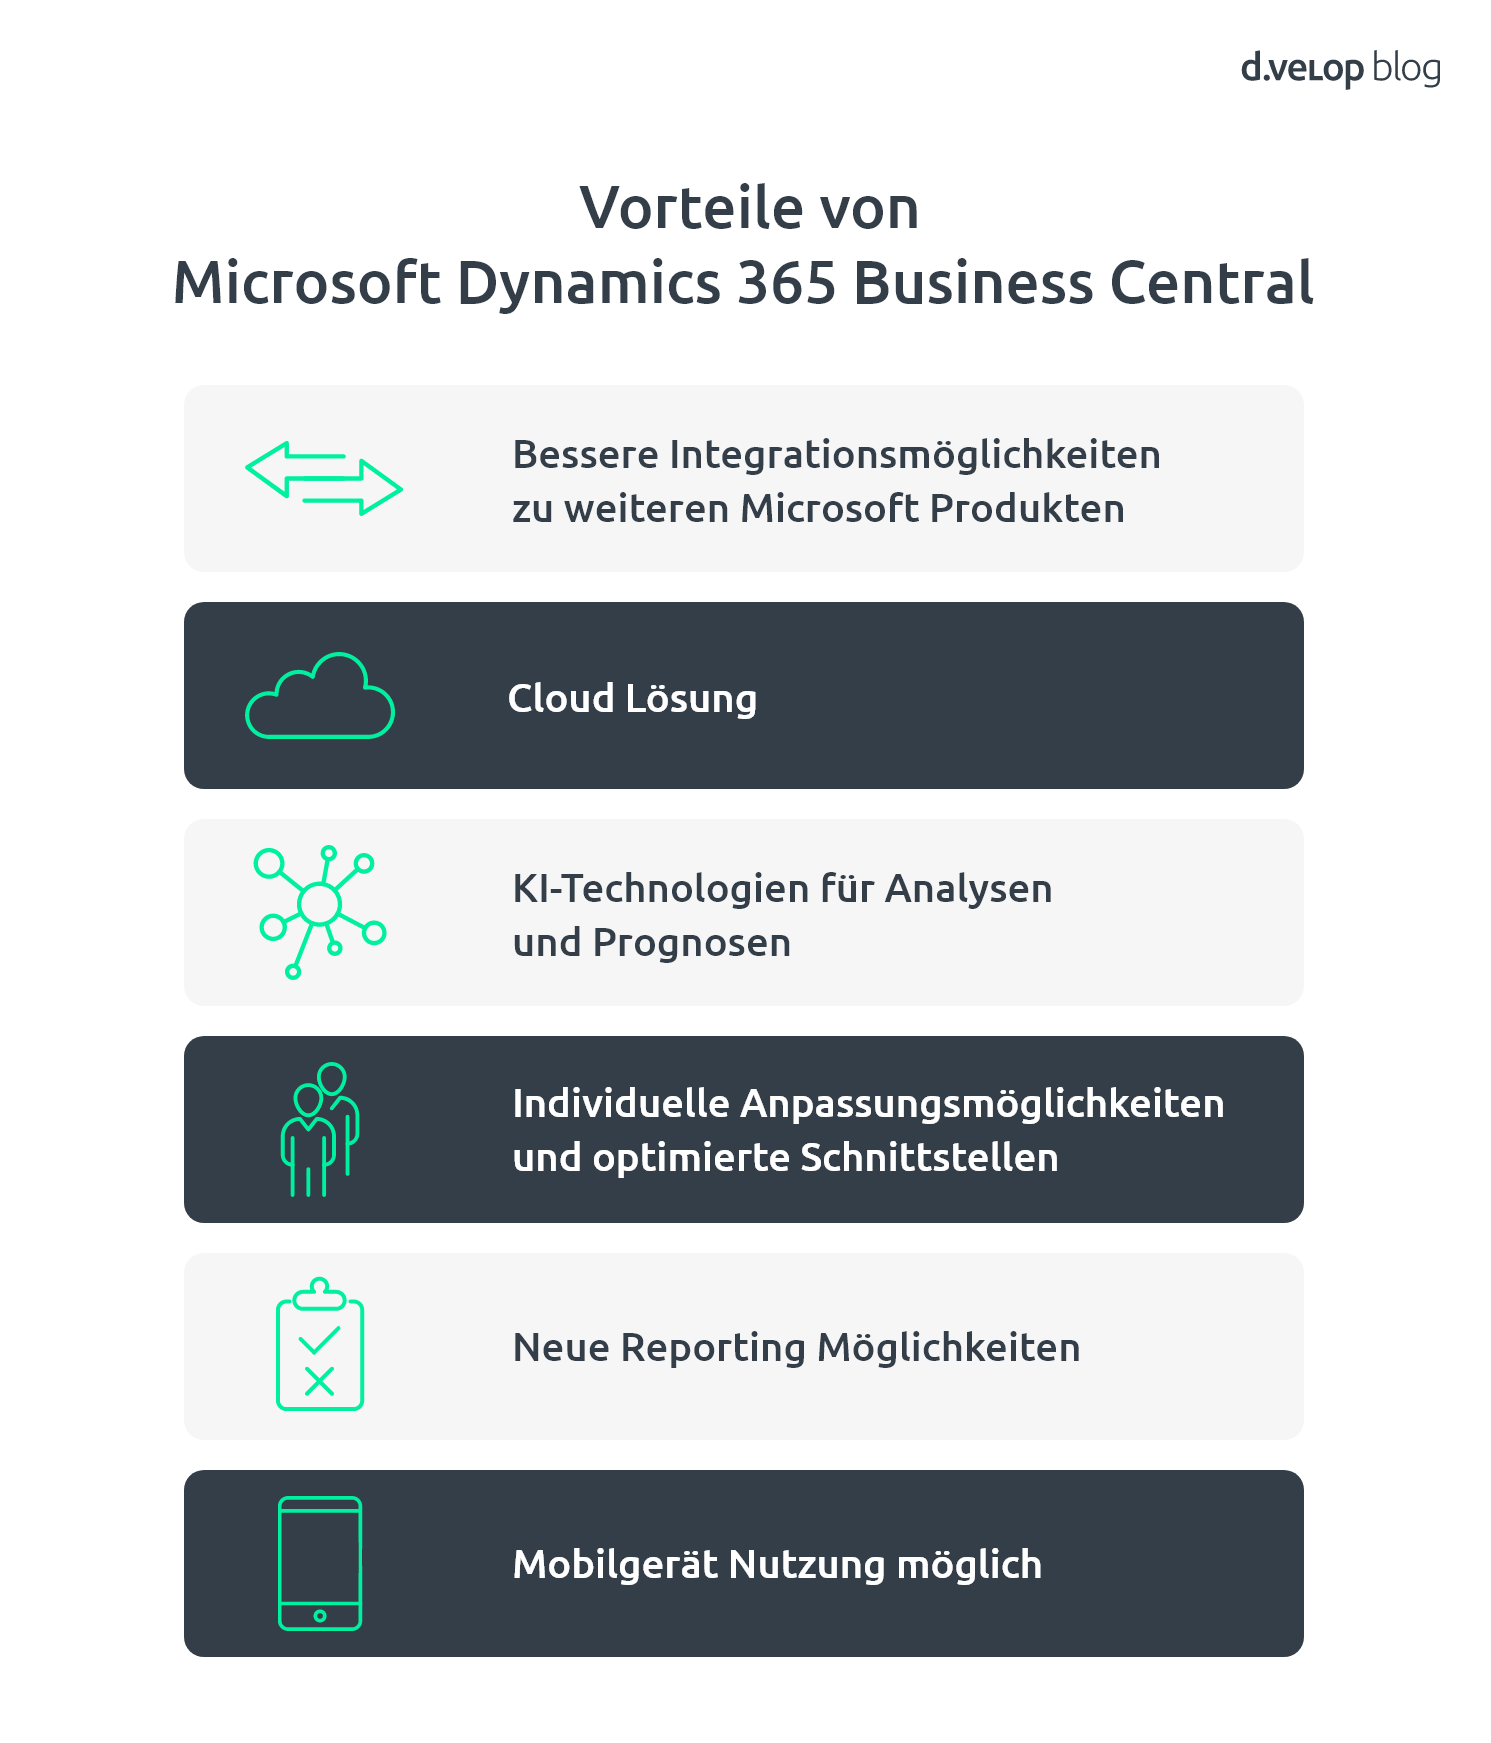 Die Vorteile von Microsoft Dynamics 365 Business Central auf einen Blick: Bessere Integrationsmöglichkeiten zu weiteren Microsoft Produkten, Cloud Lösung, KI-Technologien für Analysen und Prognosen, Individuelle Anpassungsmöglichkeiten und optimierte Schnittstellen, neue Reporting Möglichkeiten, 
Mobilgerät Nutzung möglich  